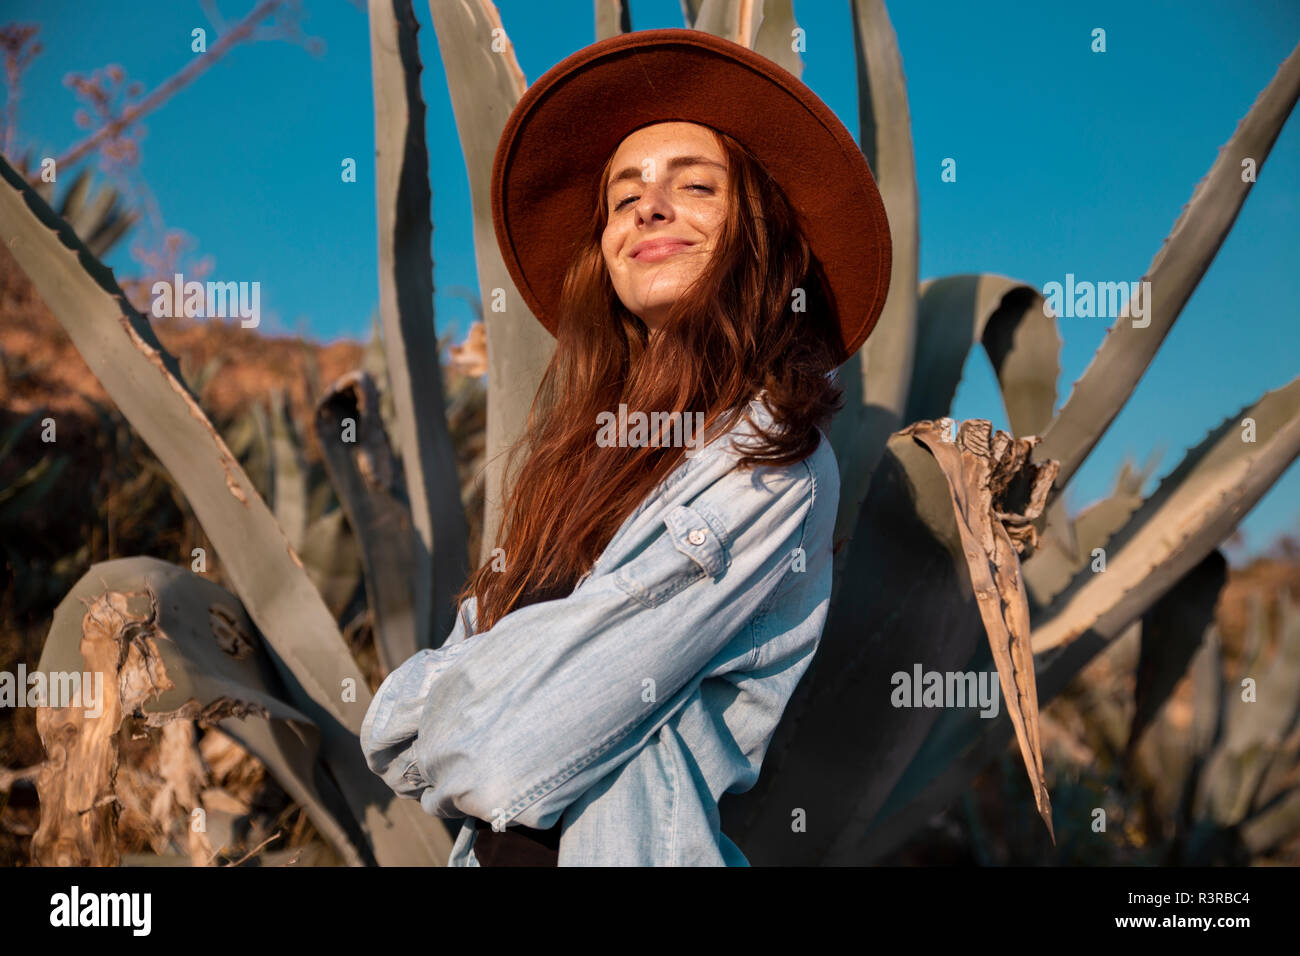 Lächelnde junge Frau mit Hut in einer Agave in ländlicher Welt Stockfoto